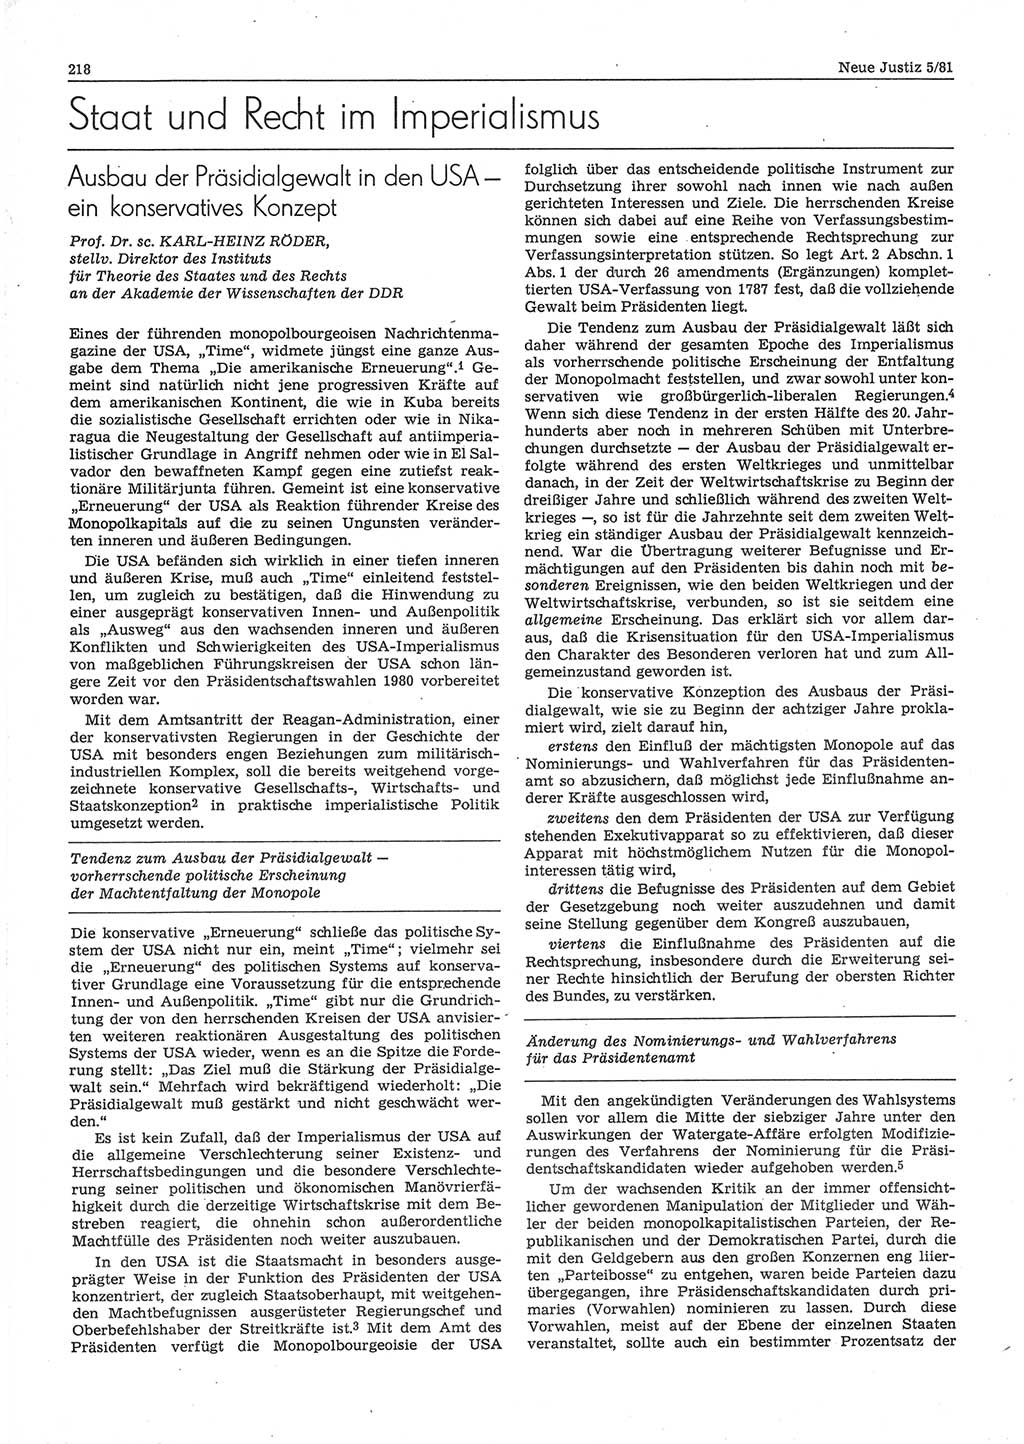 Neue Justiz (NJ), Zeitschrift für sozialistisches Recht und Gesetzlichkeit [Deutsche Demokratische Republik (DDR)], 35. Jahrgang 1981, Seite 218 (NJ DDR 1981, S. 218)